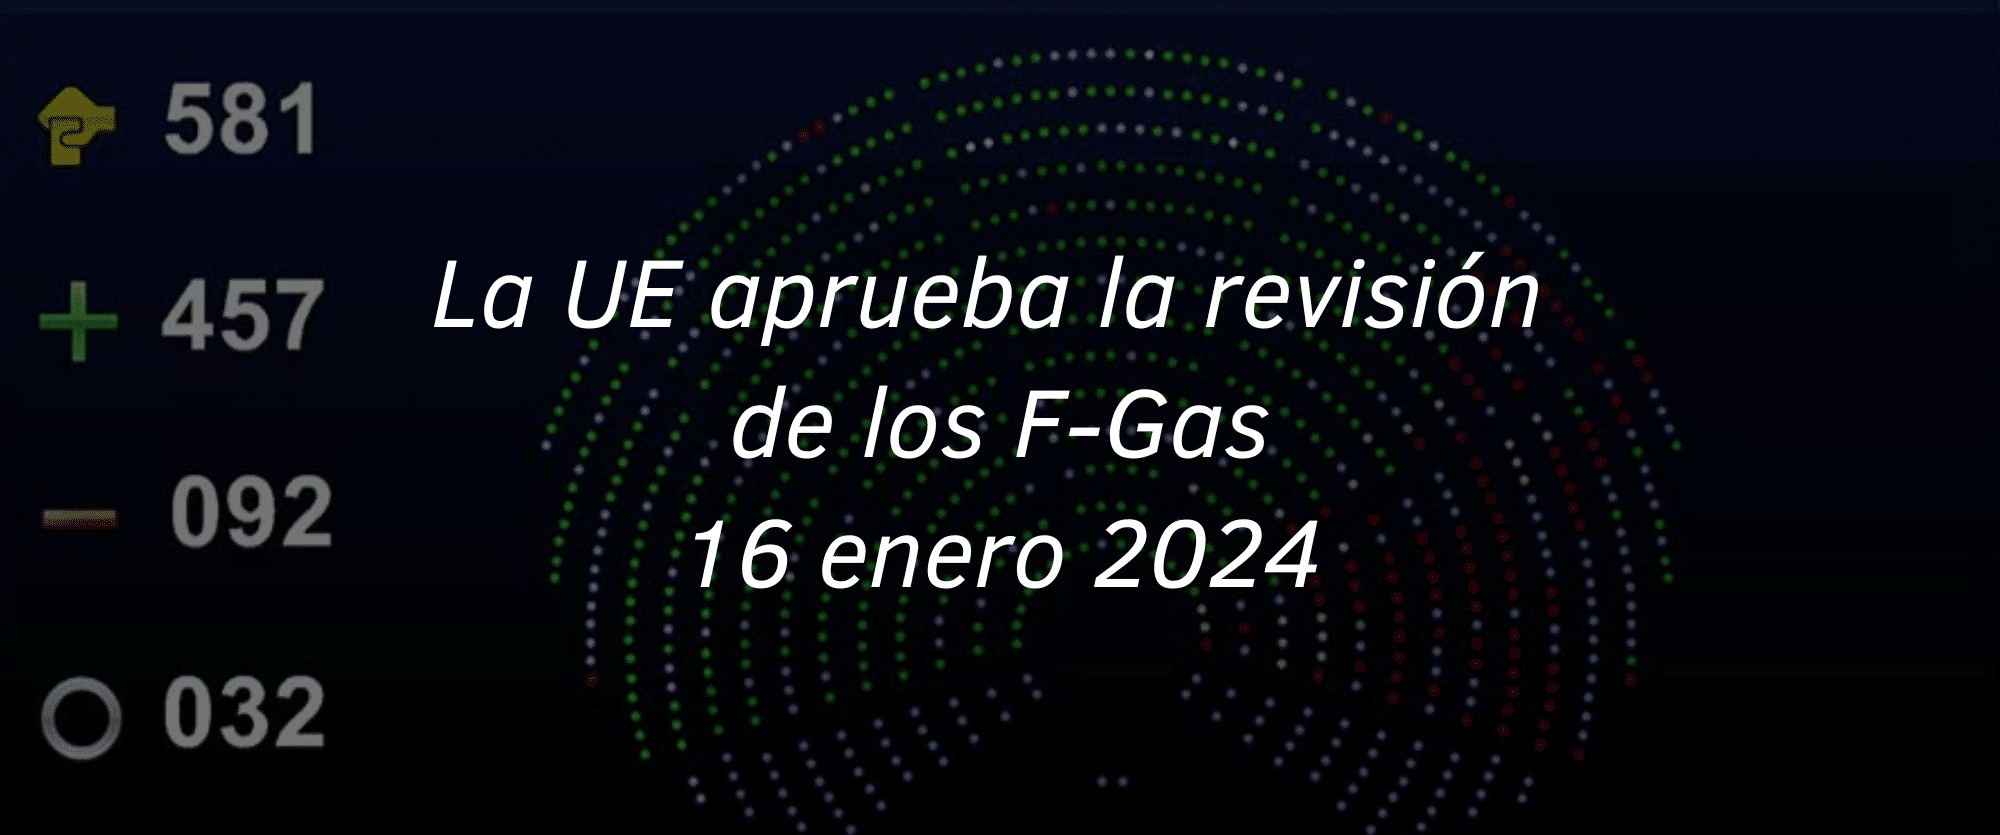 La UE aprueba la revisión de los gases fluorados F-gas en primera lectura